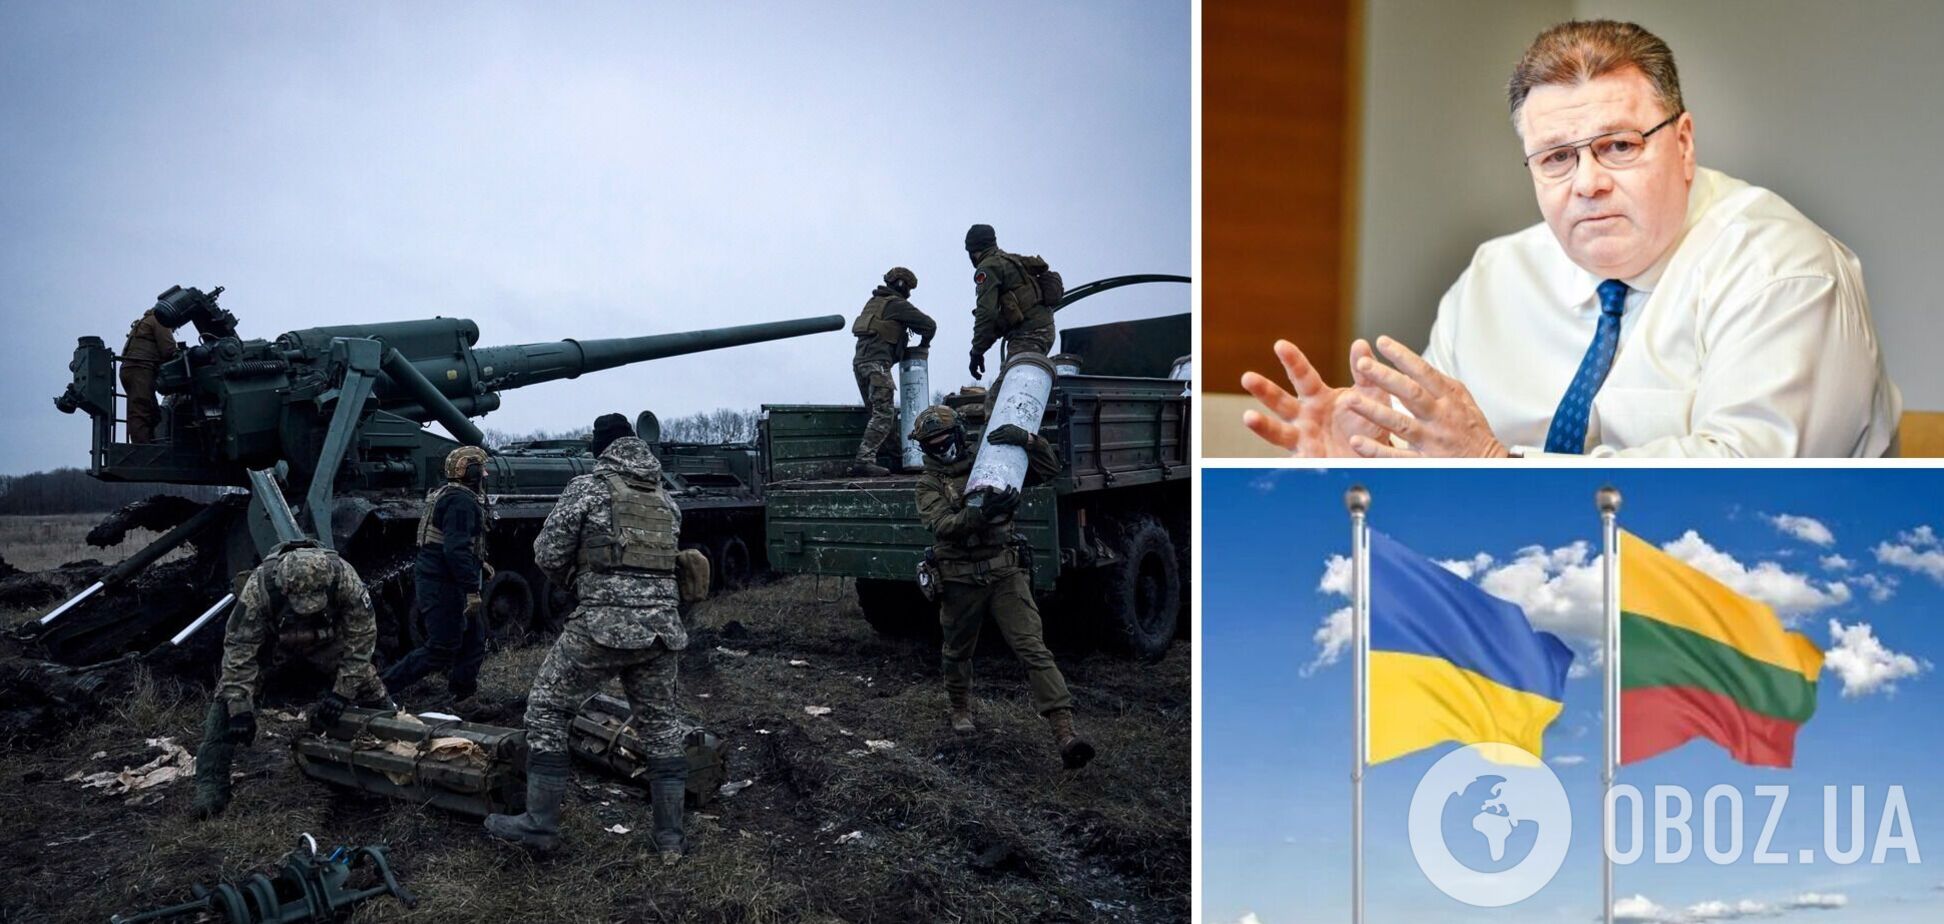 'Украине нужно освободить свои земли': Линкявичюс призвал дать ВСУ больше вооружения